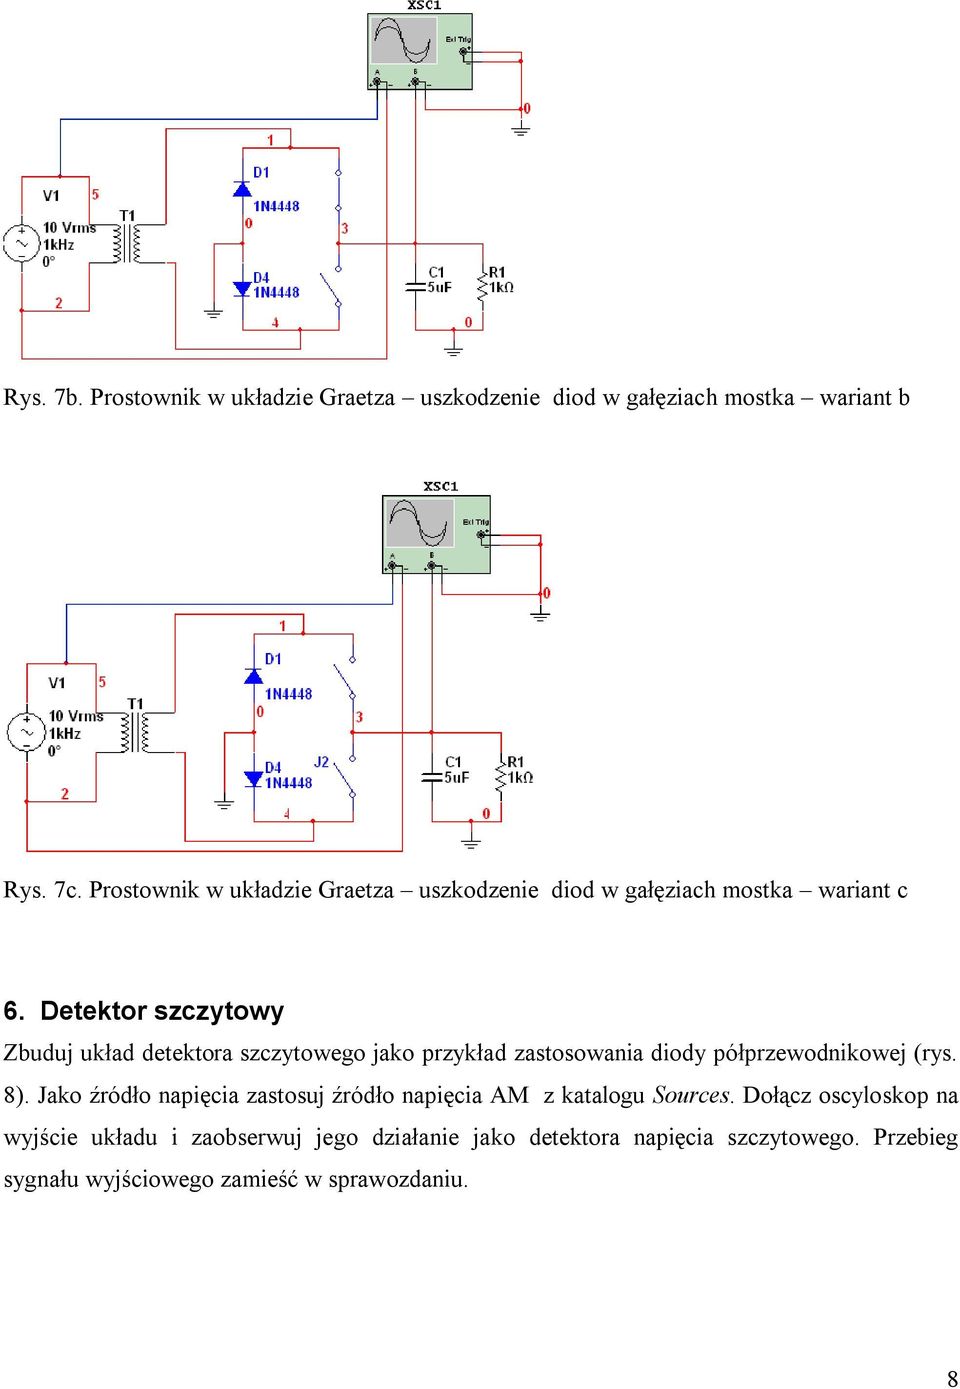 Detektor szczytowy Zbuduj układ detektora szczytowego jako przykład zastosowania diody półprzewodnikowej (rys. 8).